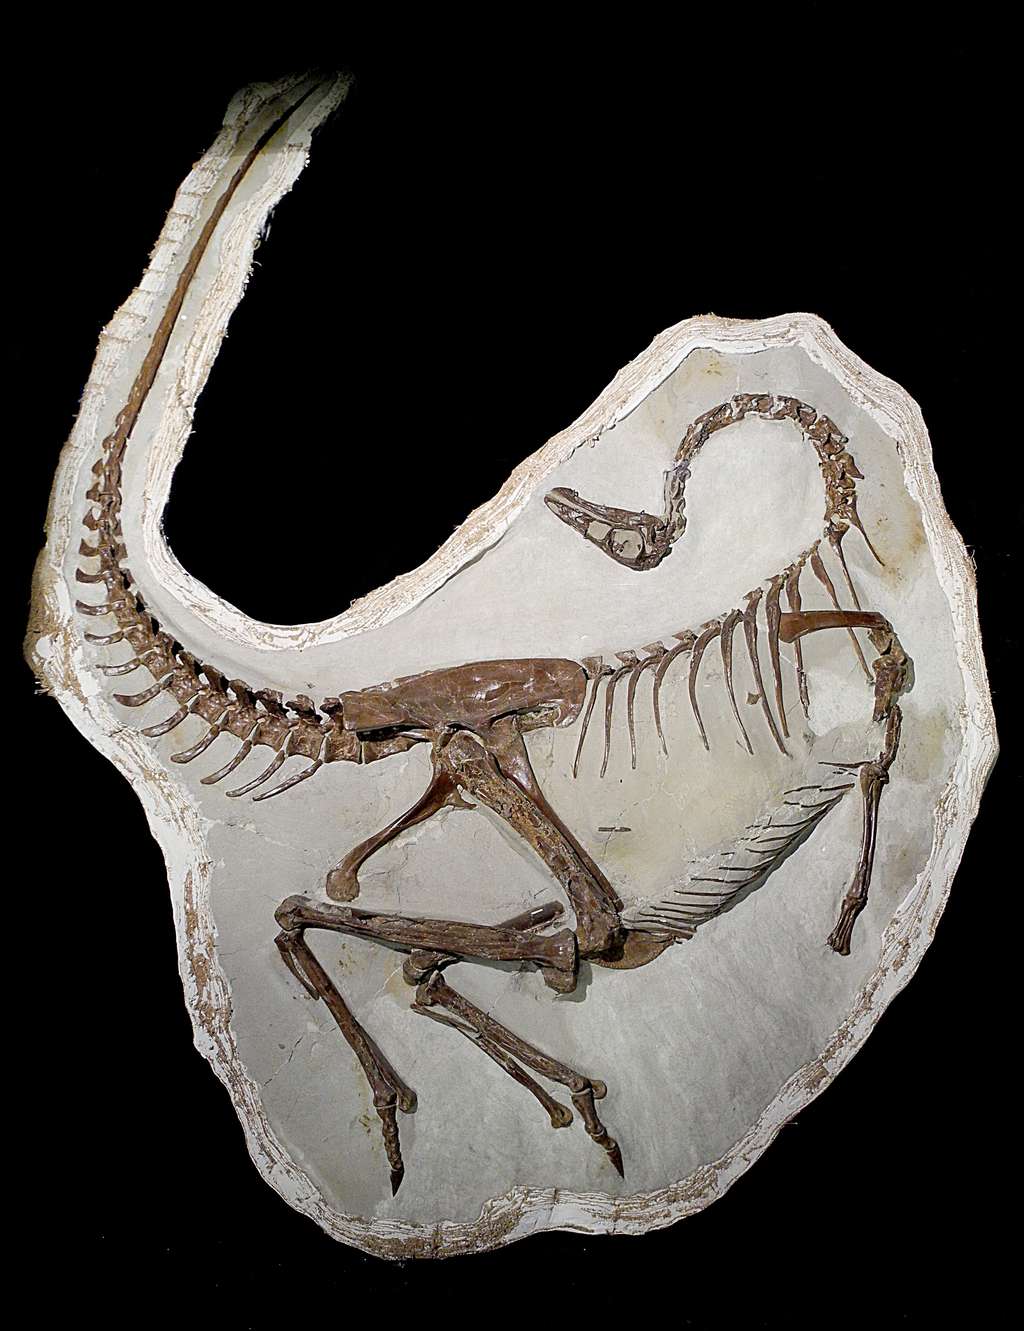 Squelette de l’<em>Ornithomimus edmontonicus </em>ayant conservé des traces de plumes sur ses cubitus. Les adultes de cette espèce pouvaient peser entre 100 et 150 kg. © <em>Royal Tyrrell Museum</em>